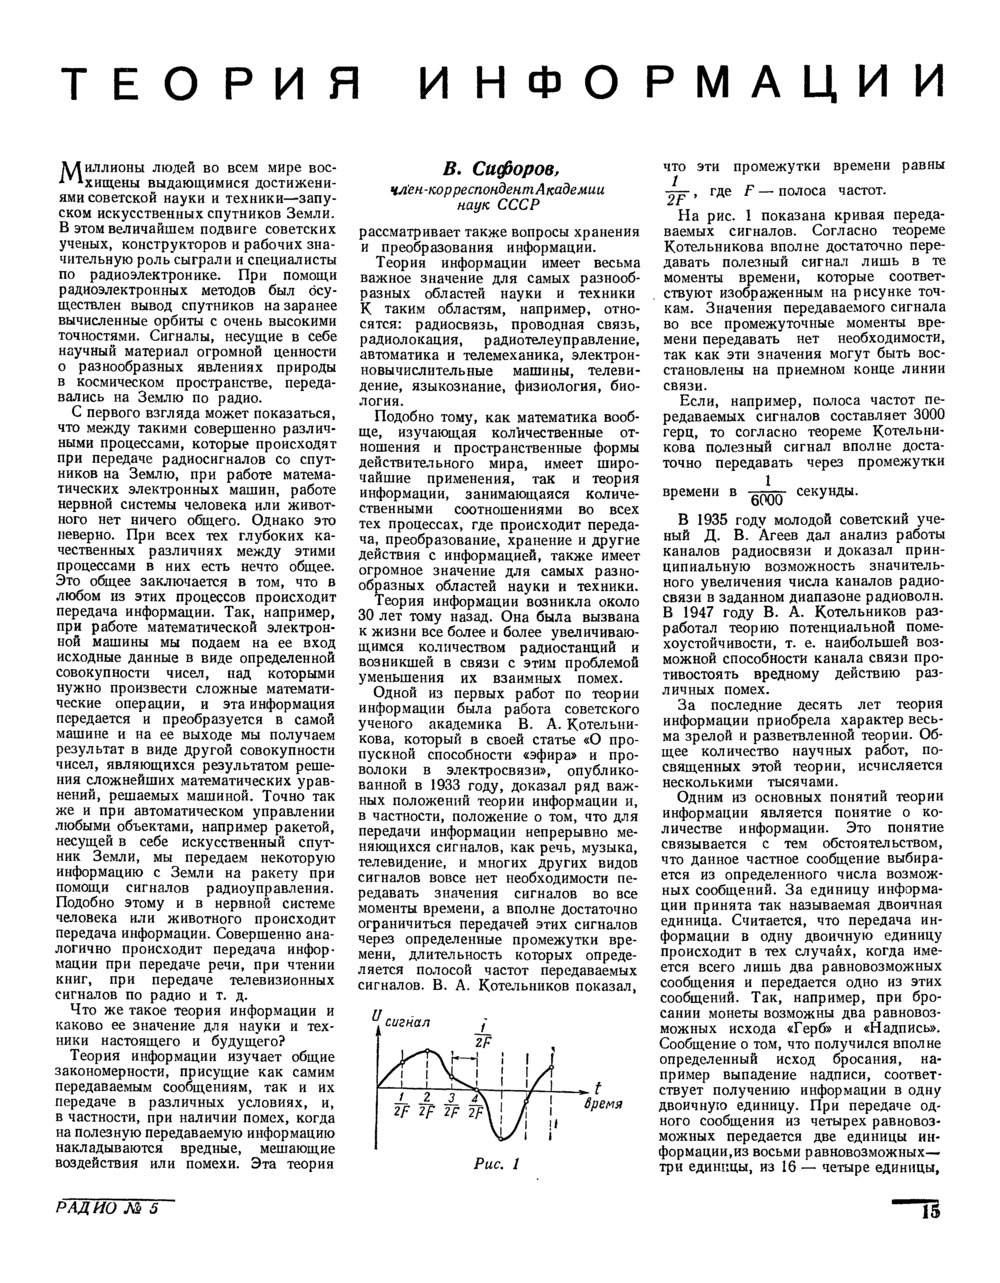 Стр. 15 журнала «Радио» № 5 за 1958 год